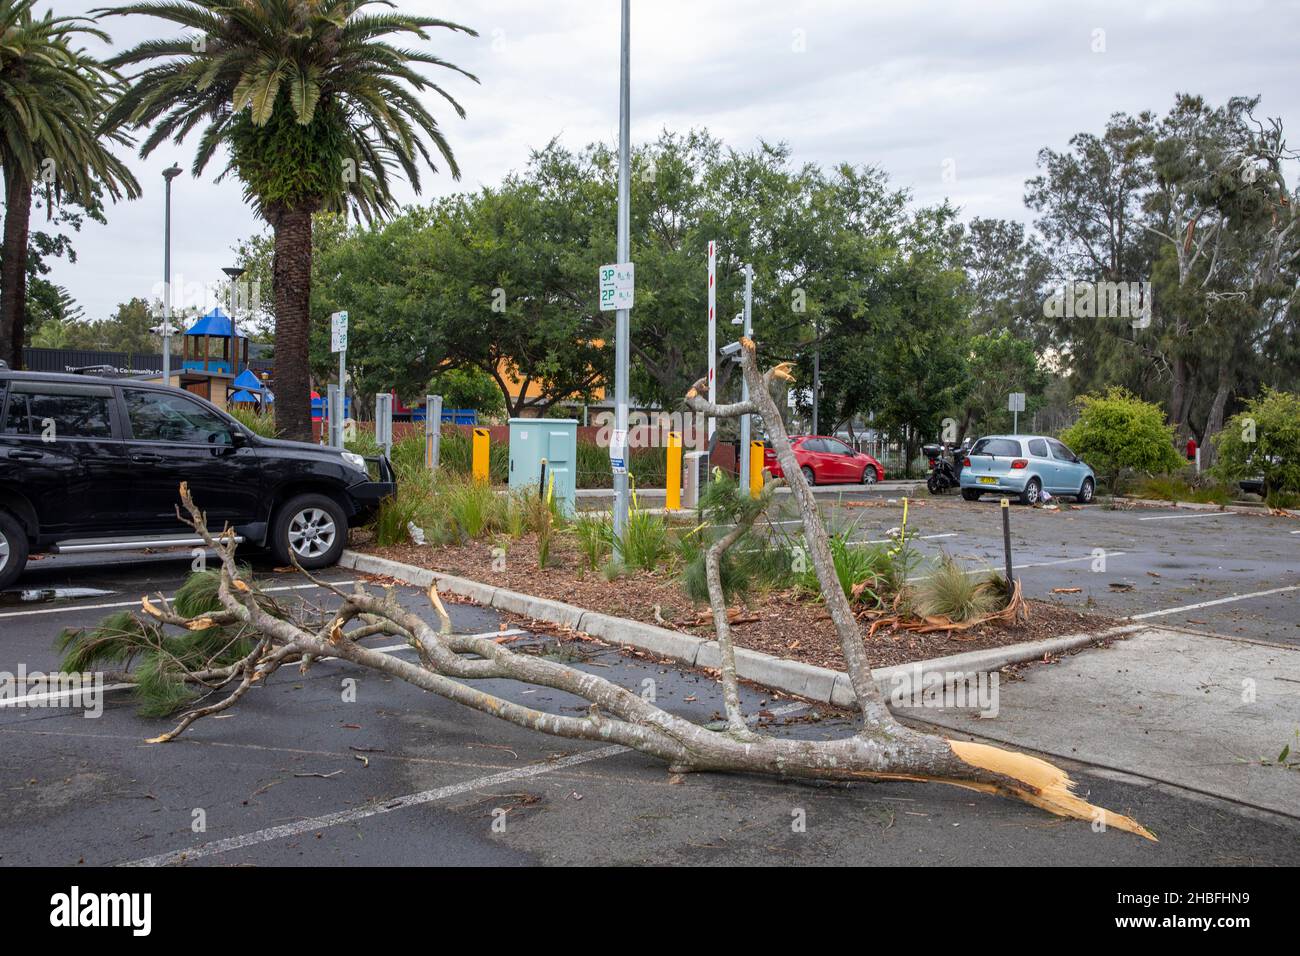 La tempête de freak a fait tomber des arbres et des lignes électriques sur les plages du nord de Sydney, une dame est décédée et d'autres sont critiques, les services d'urgence ont assisté Banque D'Images